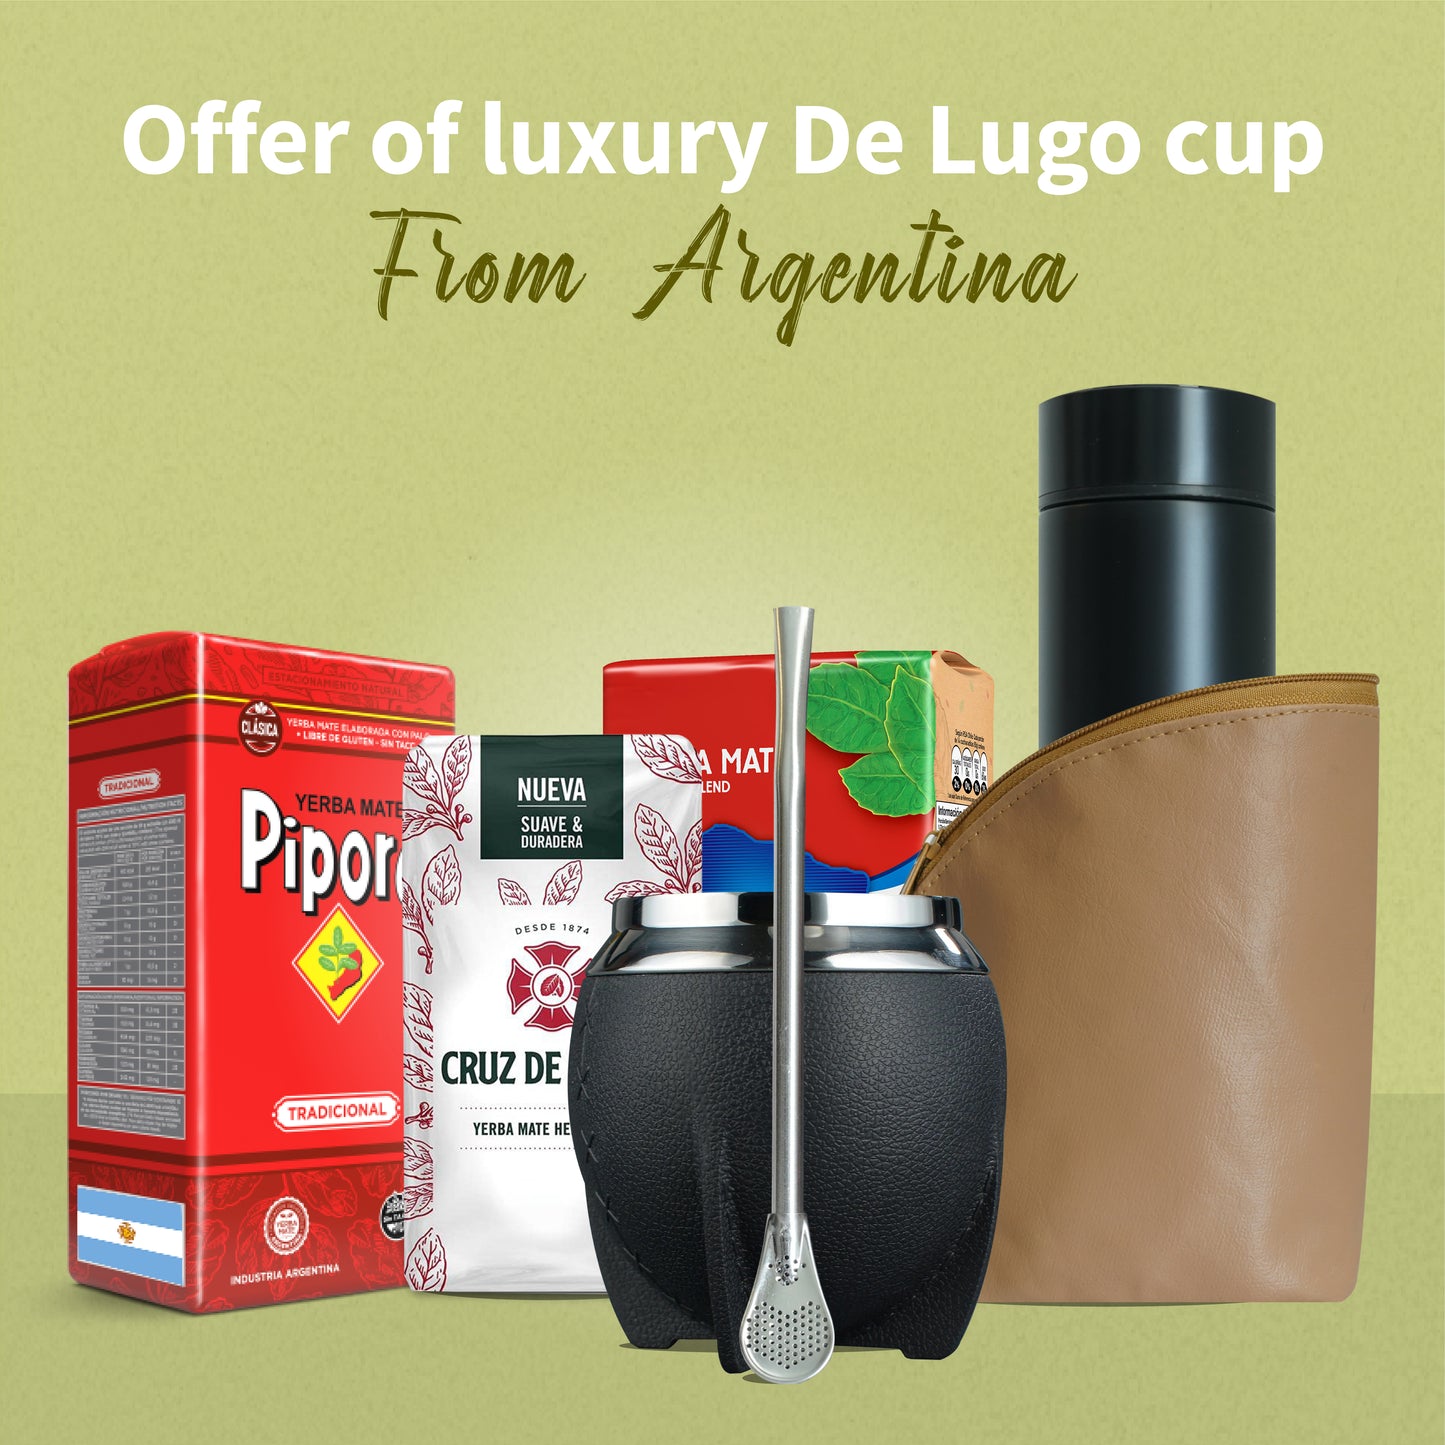 Oferta de la taza Natural de Lugo